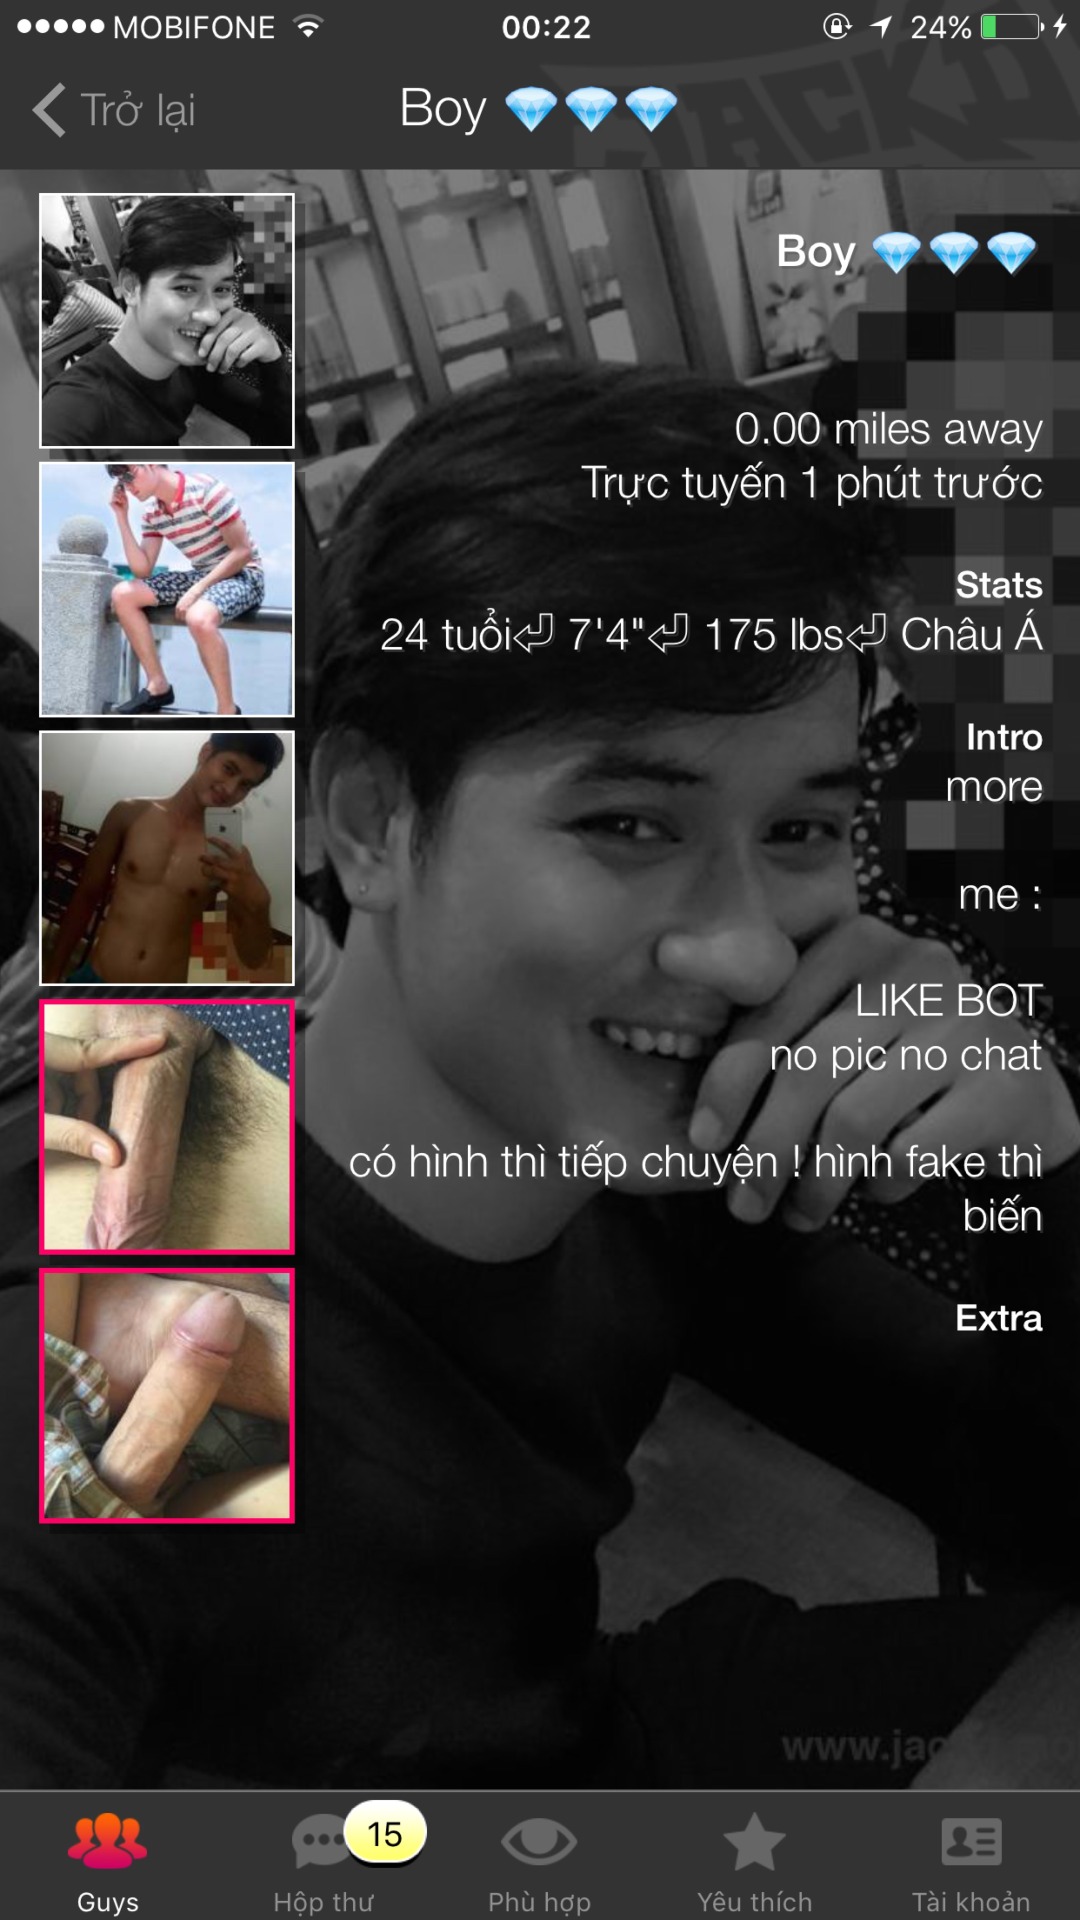 boyfboy91:  Hotboy1    Củng có lúc bị lộ  Model độc quyền cho photo